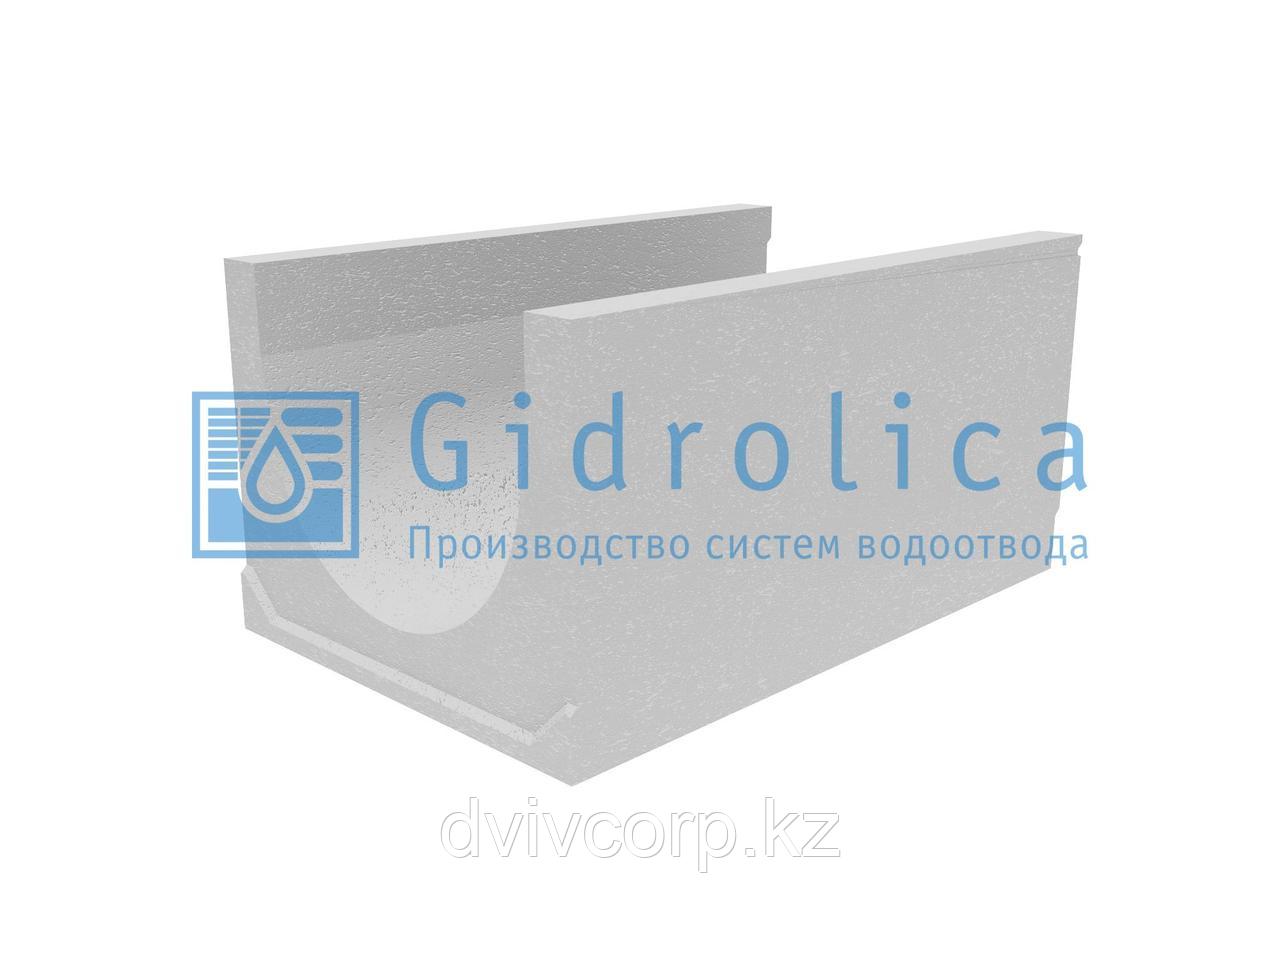 Лоток водоотводный бетонный коробчатый (СО-500мм), с уклоном 0,5%  КUу 100.65(50).50,5(41,5) - BGU-XL, № 11